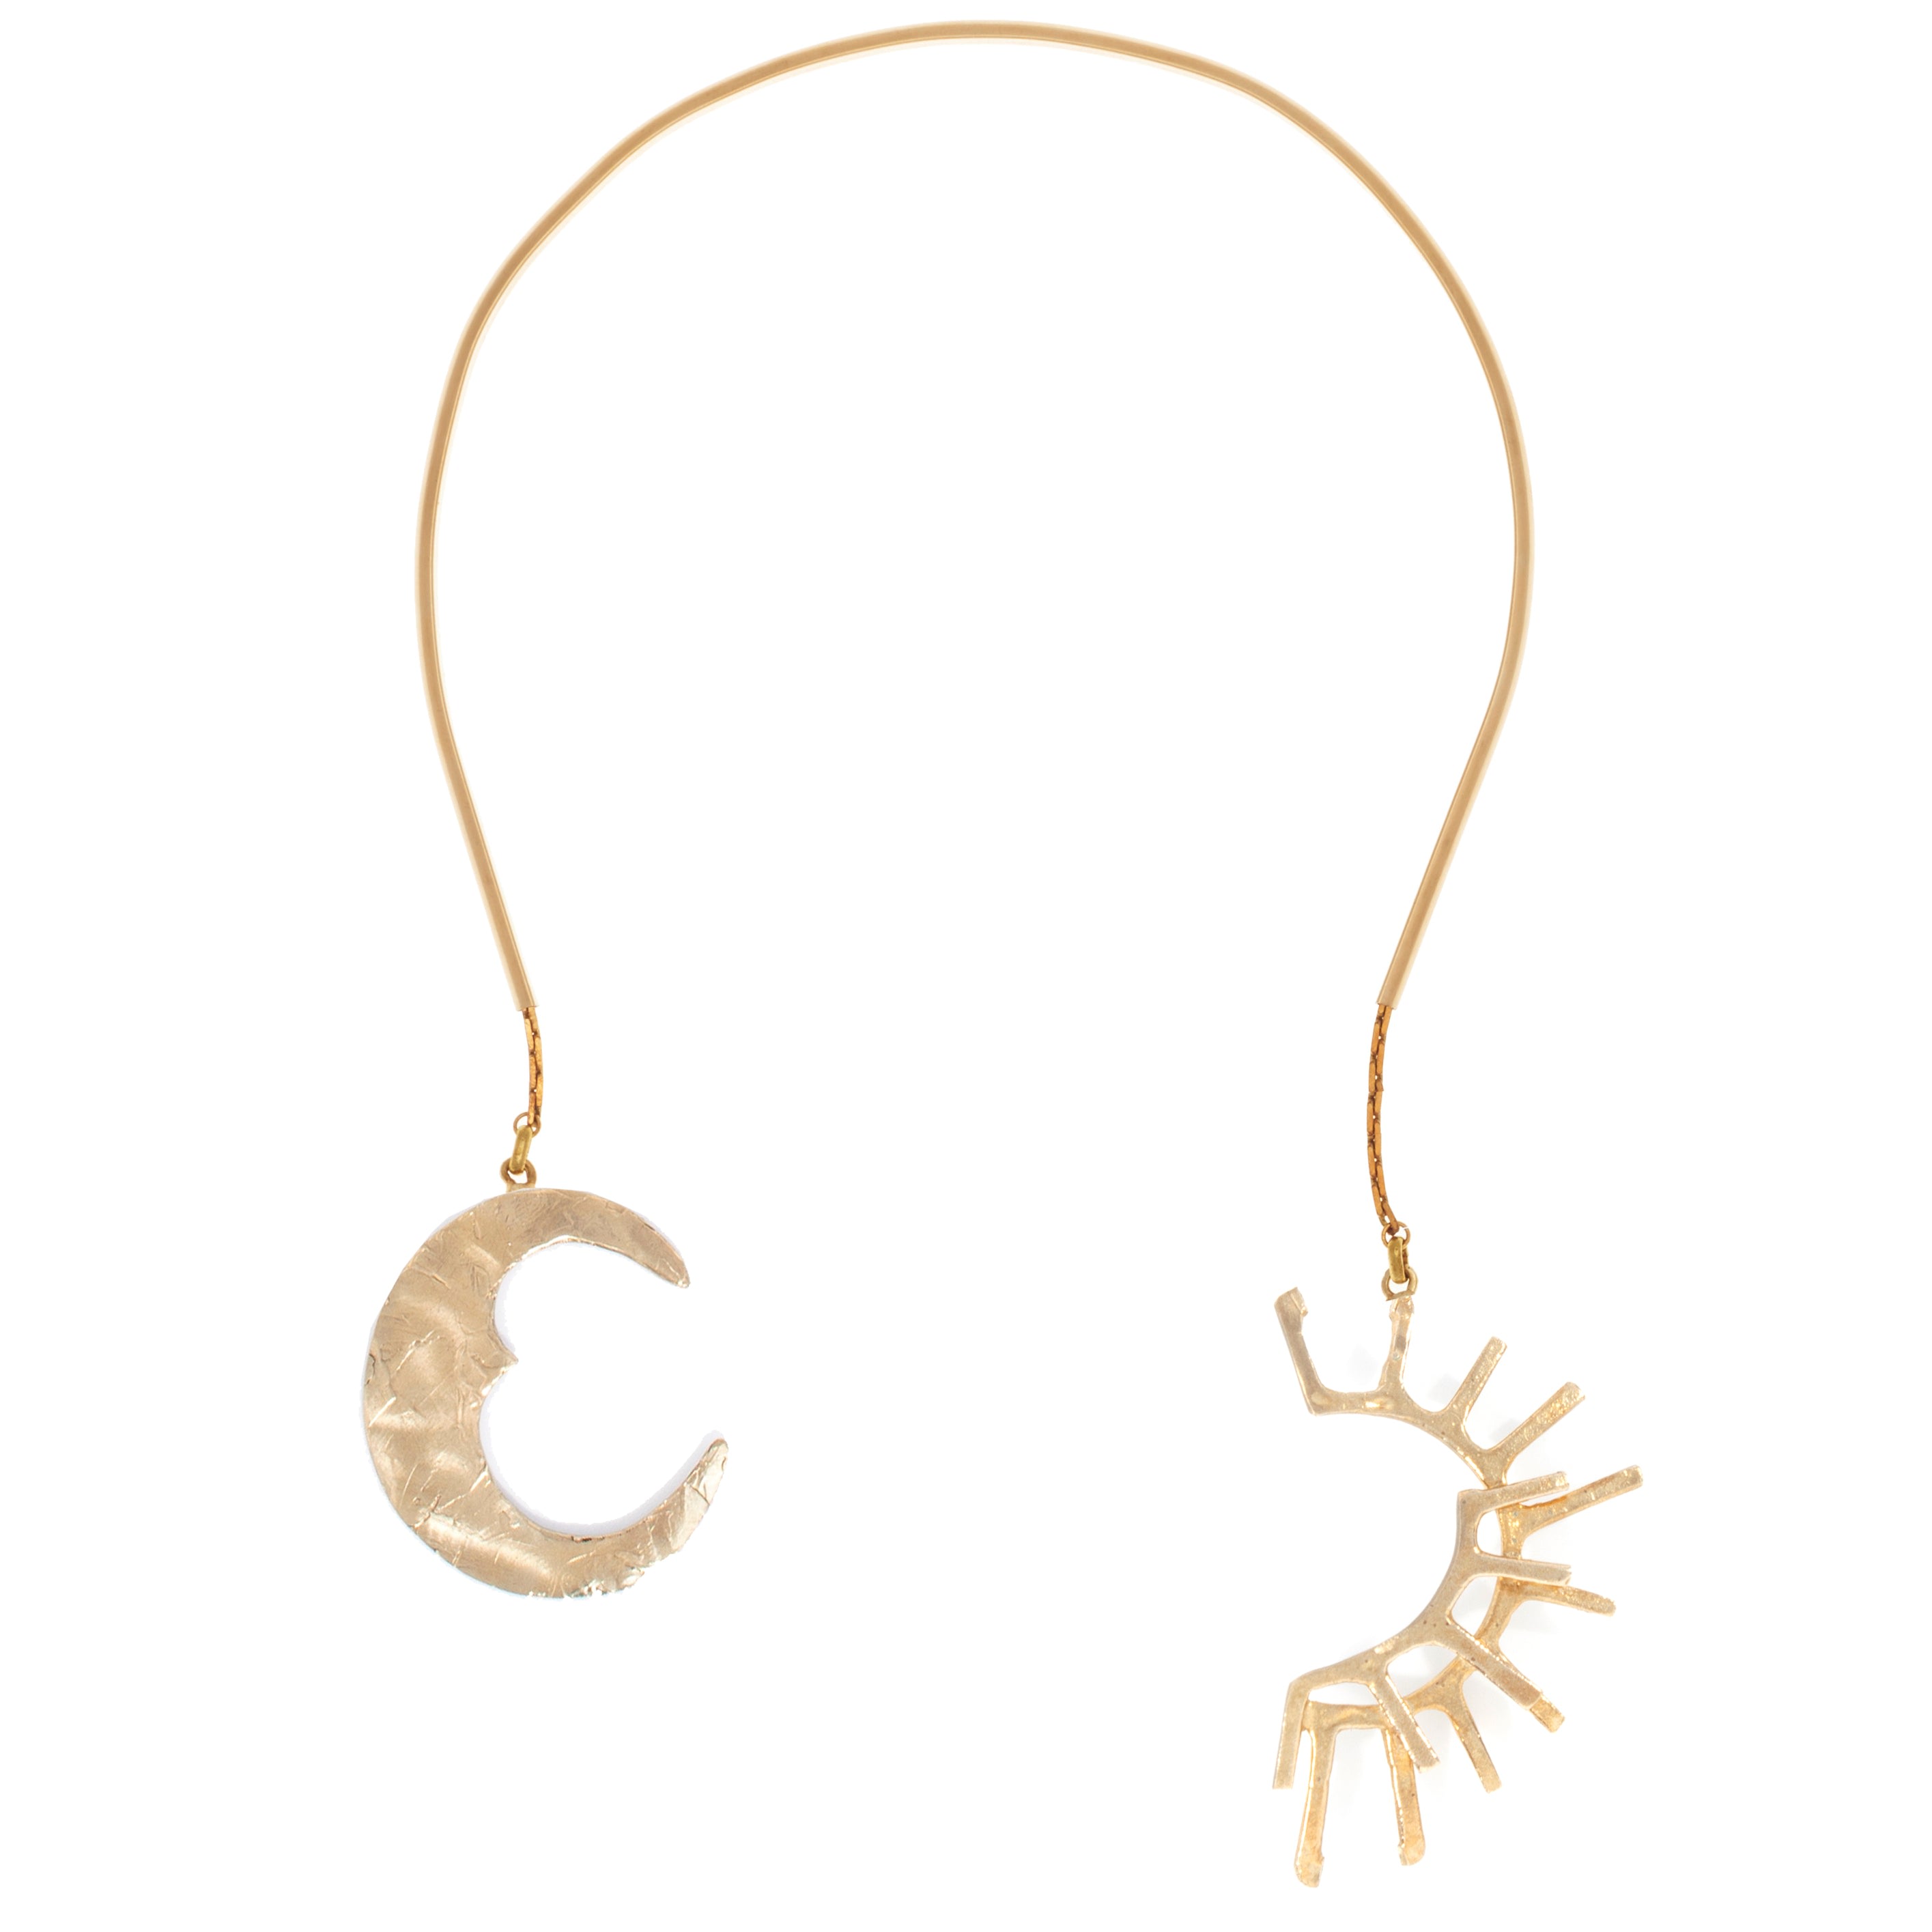 Castlecliff Women's Gold Equinox Collar